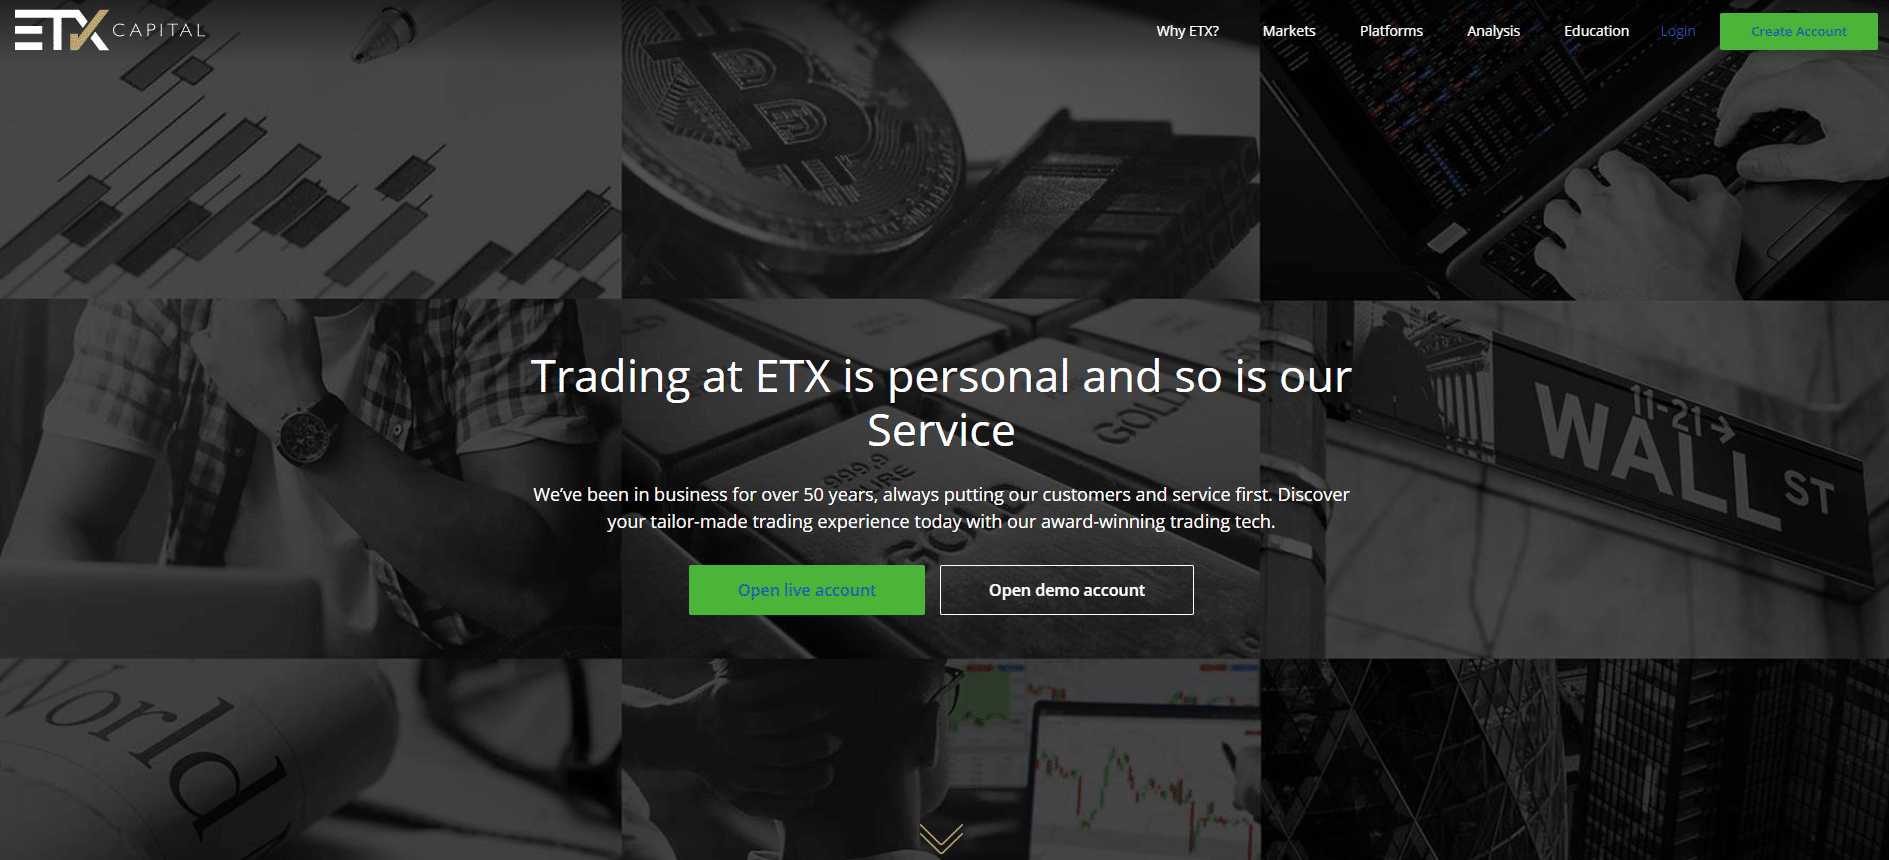 ETX Capital officiële website